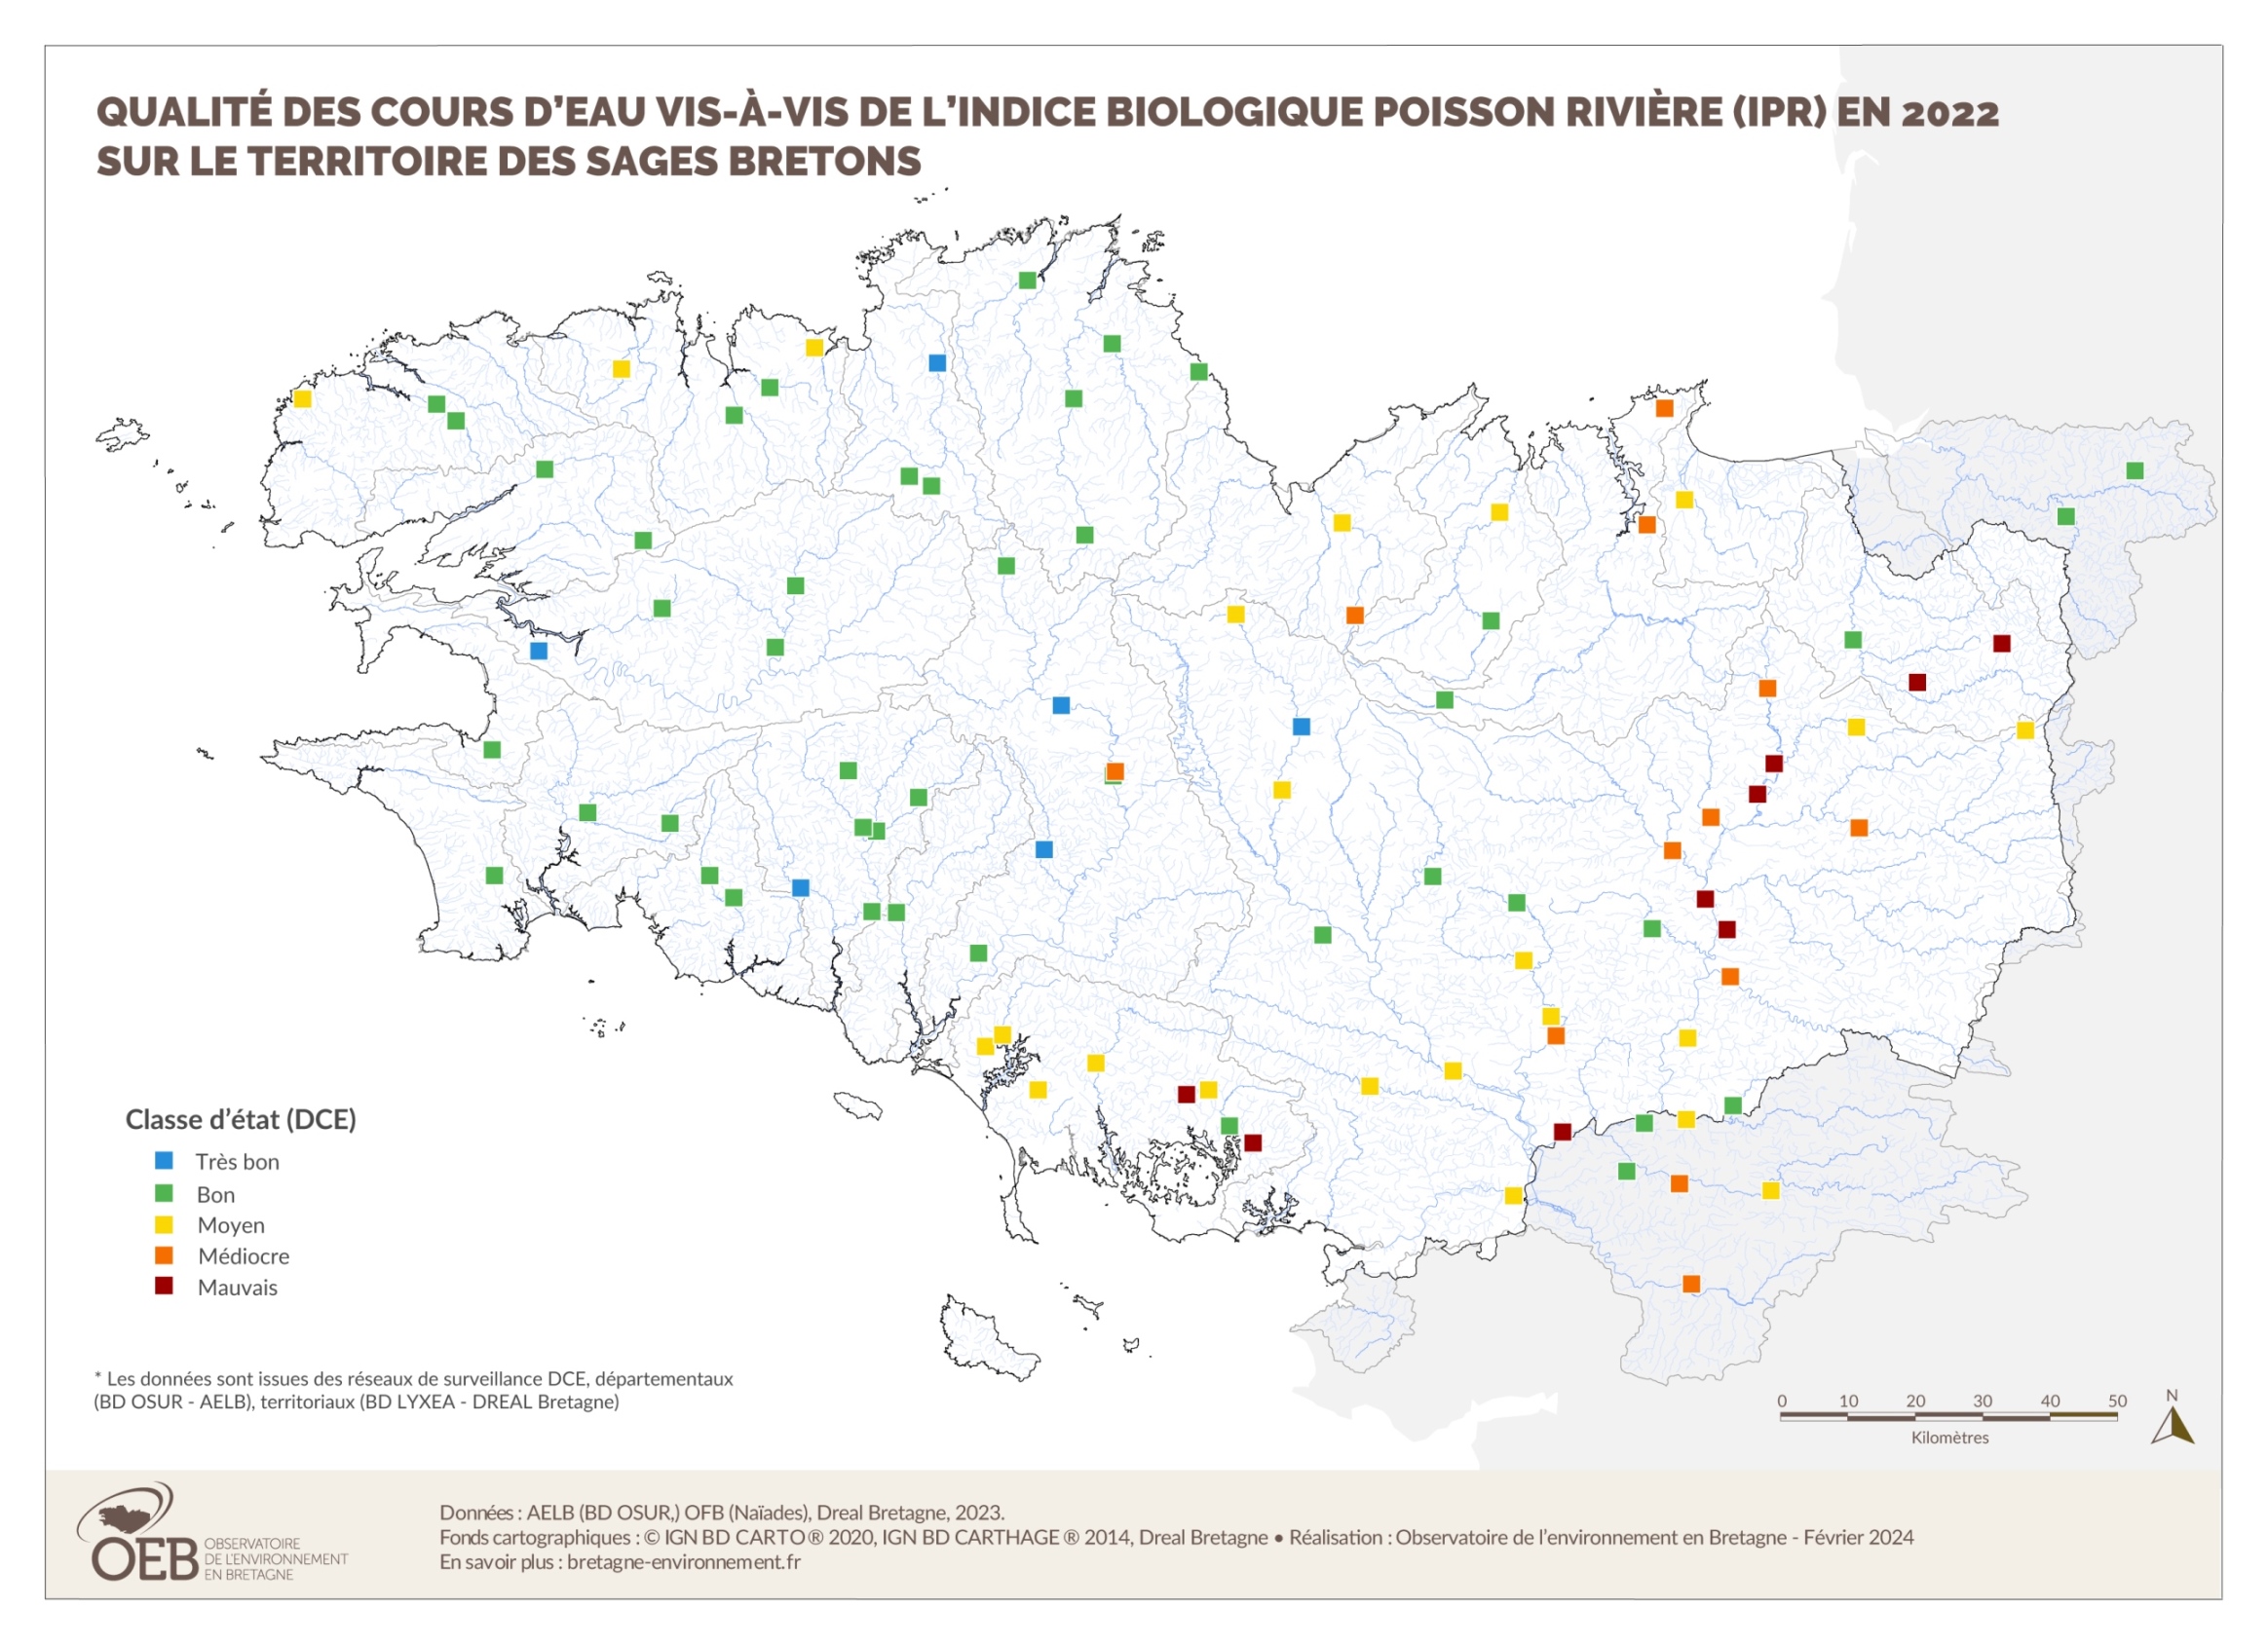 Qualité des cours d'eau bretons vis-à-vis de l'indice poissons (IPR) en 2022